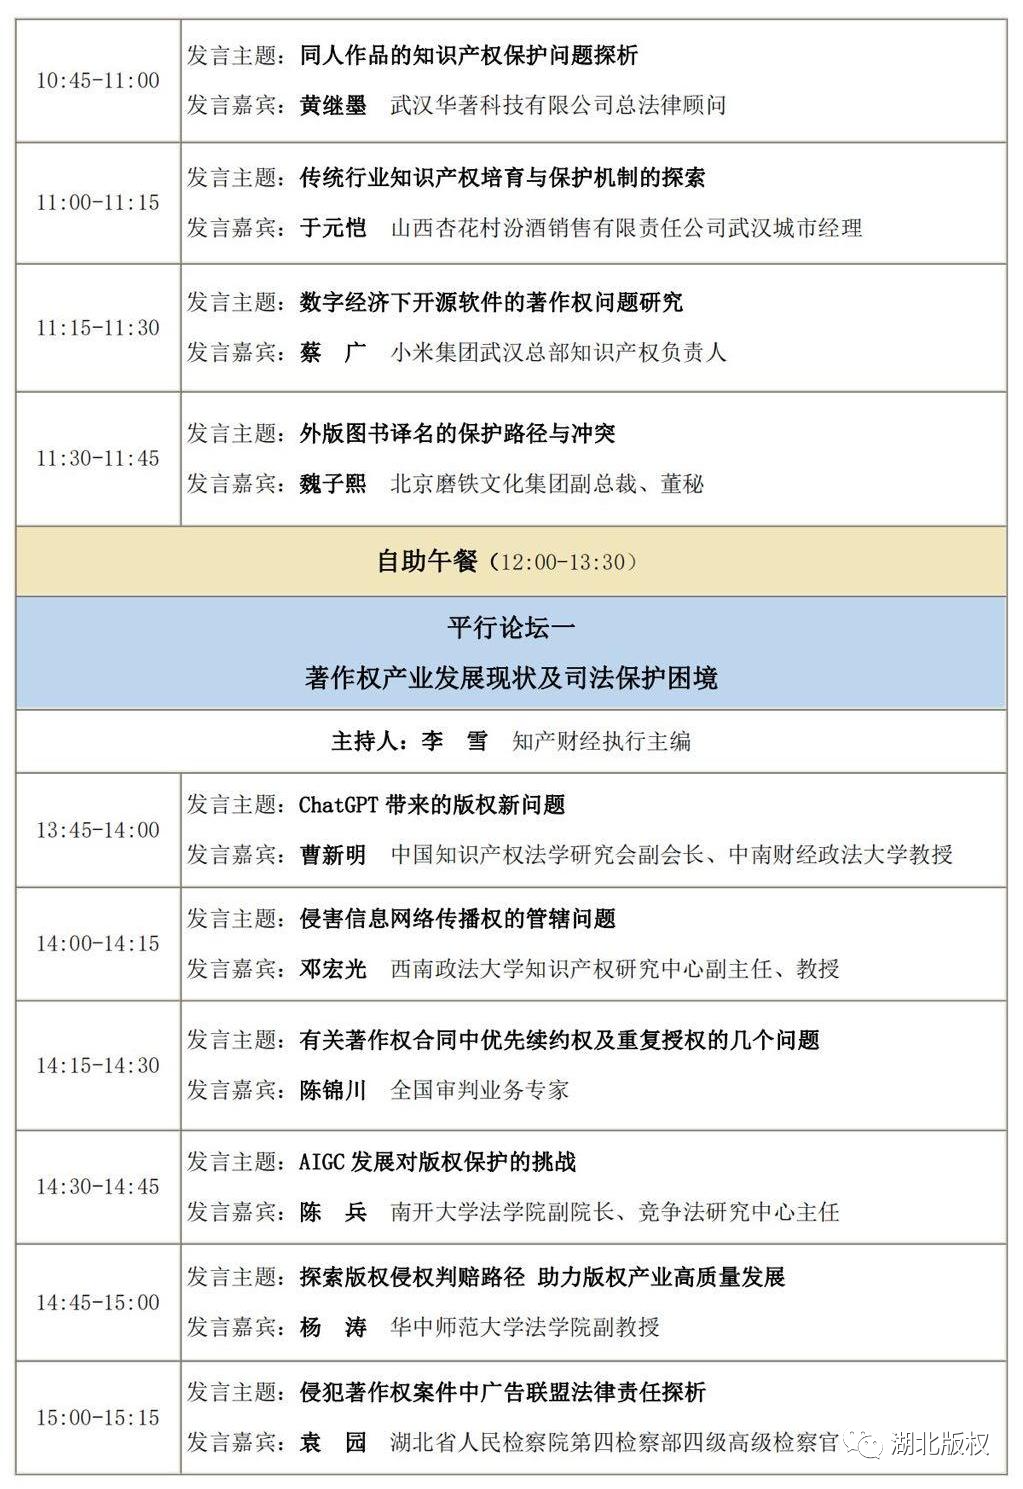 【会议报名】第二届版权产业创新及知产保护东湖论坛（6月16日武汉）